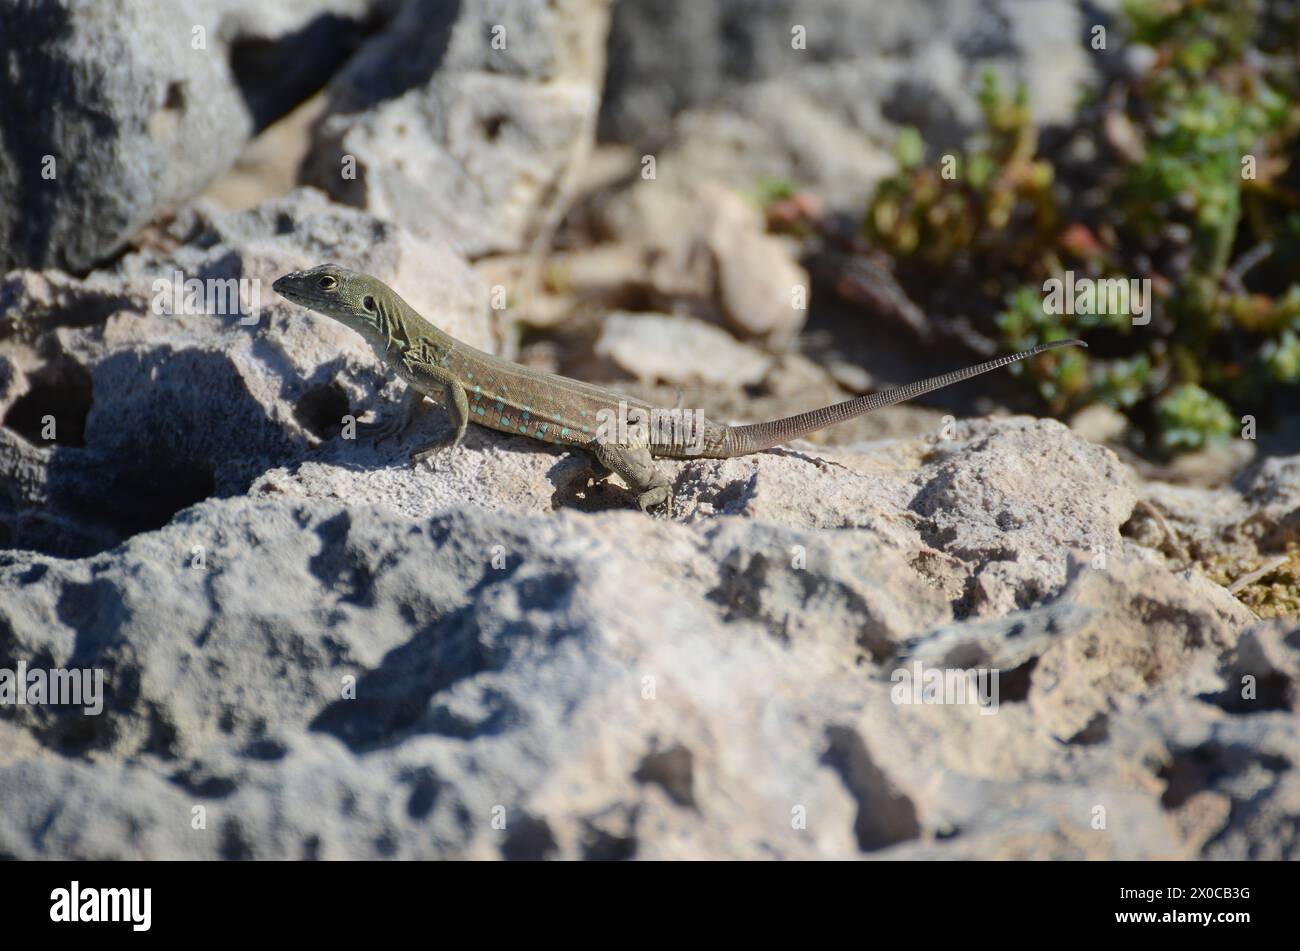 Un lagarto está en una roca. El lagarto es marrón y blanco Foto de stock